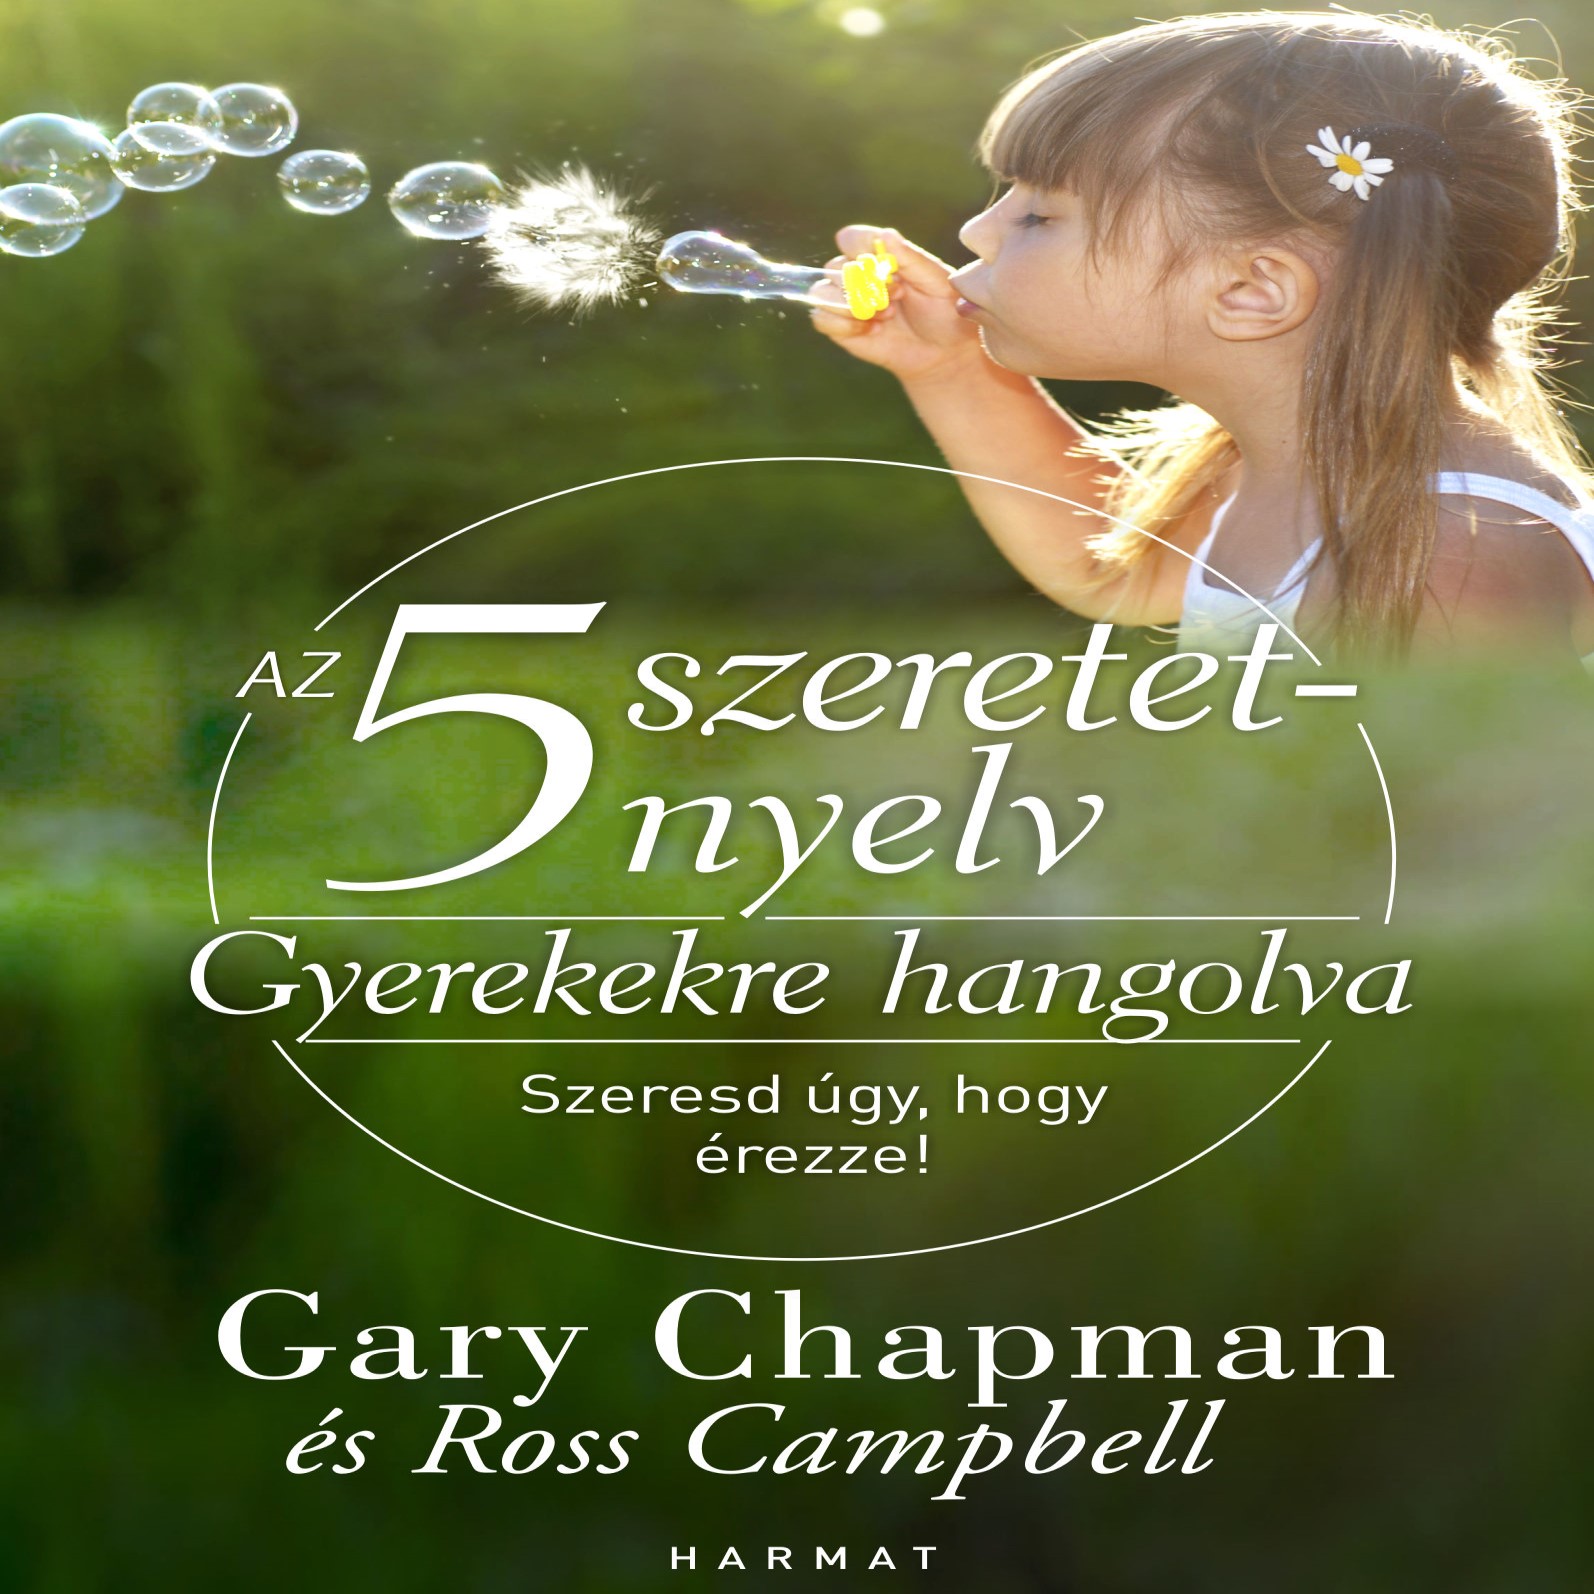 Gary Chapman - Az 5 szeretetnyelv - Gyerekekre hangolva [eHangoskönyv]